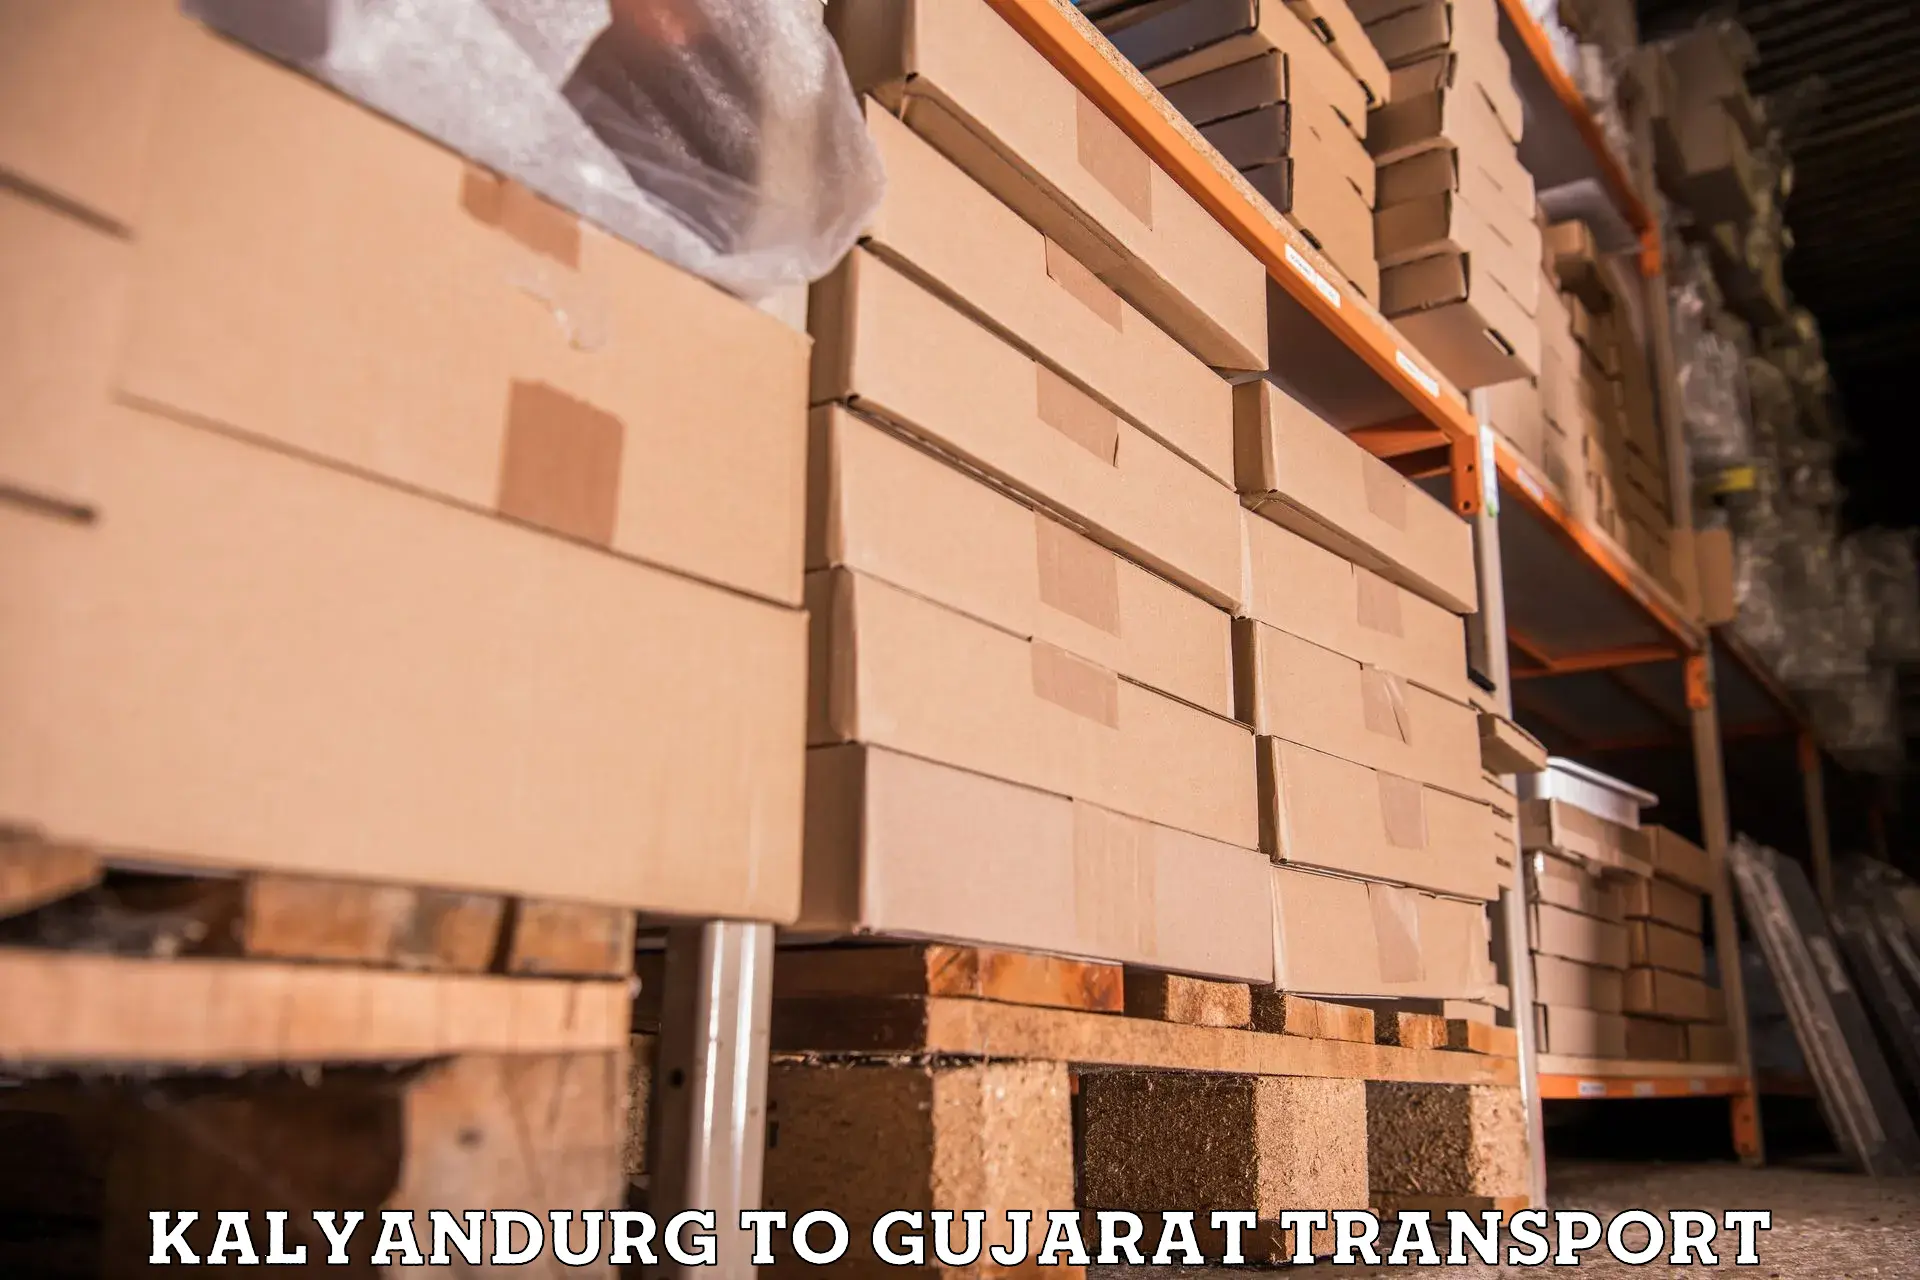 Transport in sharing Kalyandurg to Gujarat